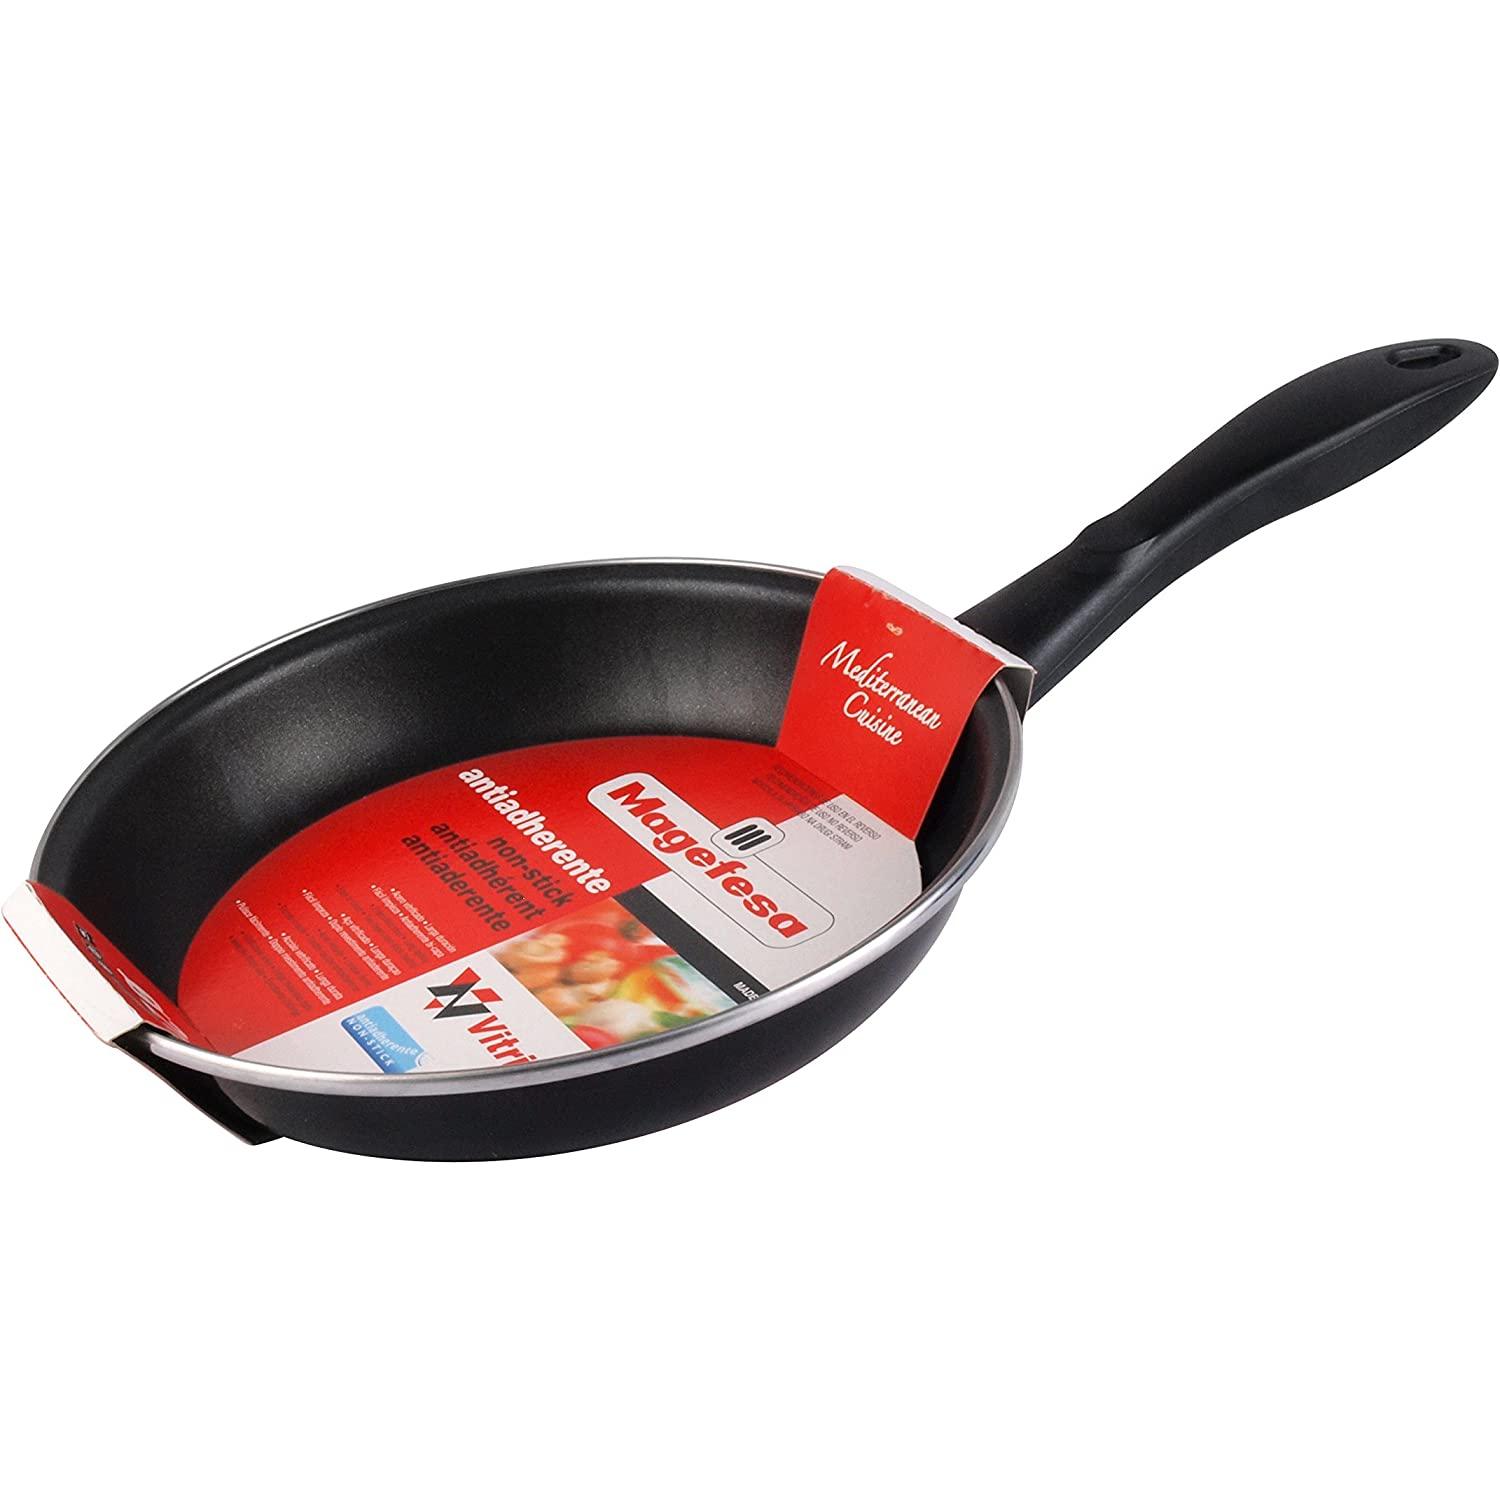 MGF ® Ferro by Sergi Arola olla ovalada de 28 cm roja, fabricada en hierro  fundido, apta para todo tipo de cocinas, lavavajillas y horno, incluido  inducción, optimo ahorro de energía y